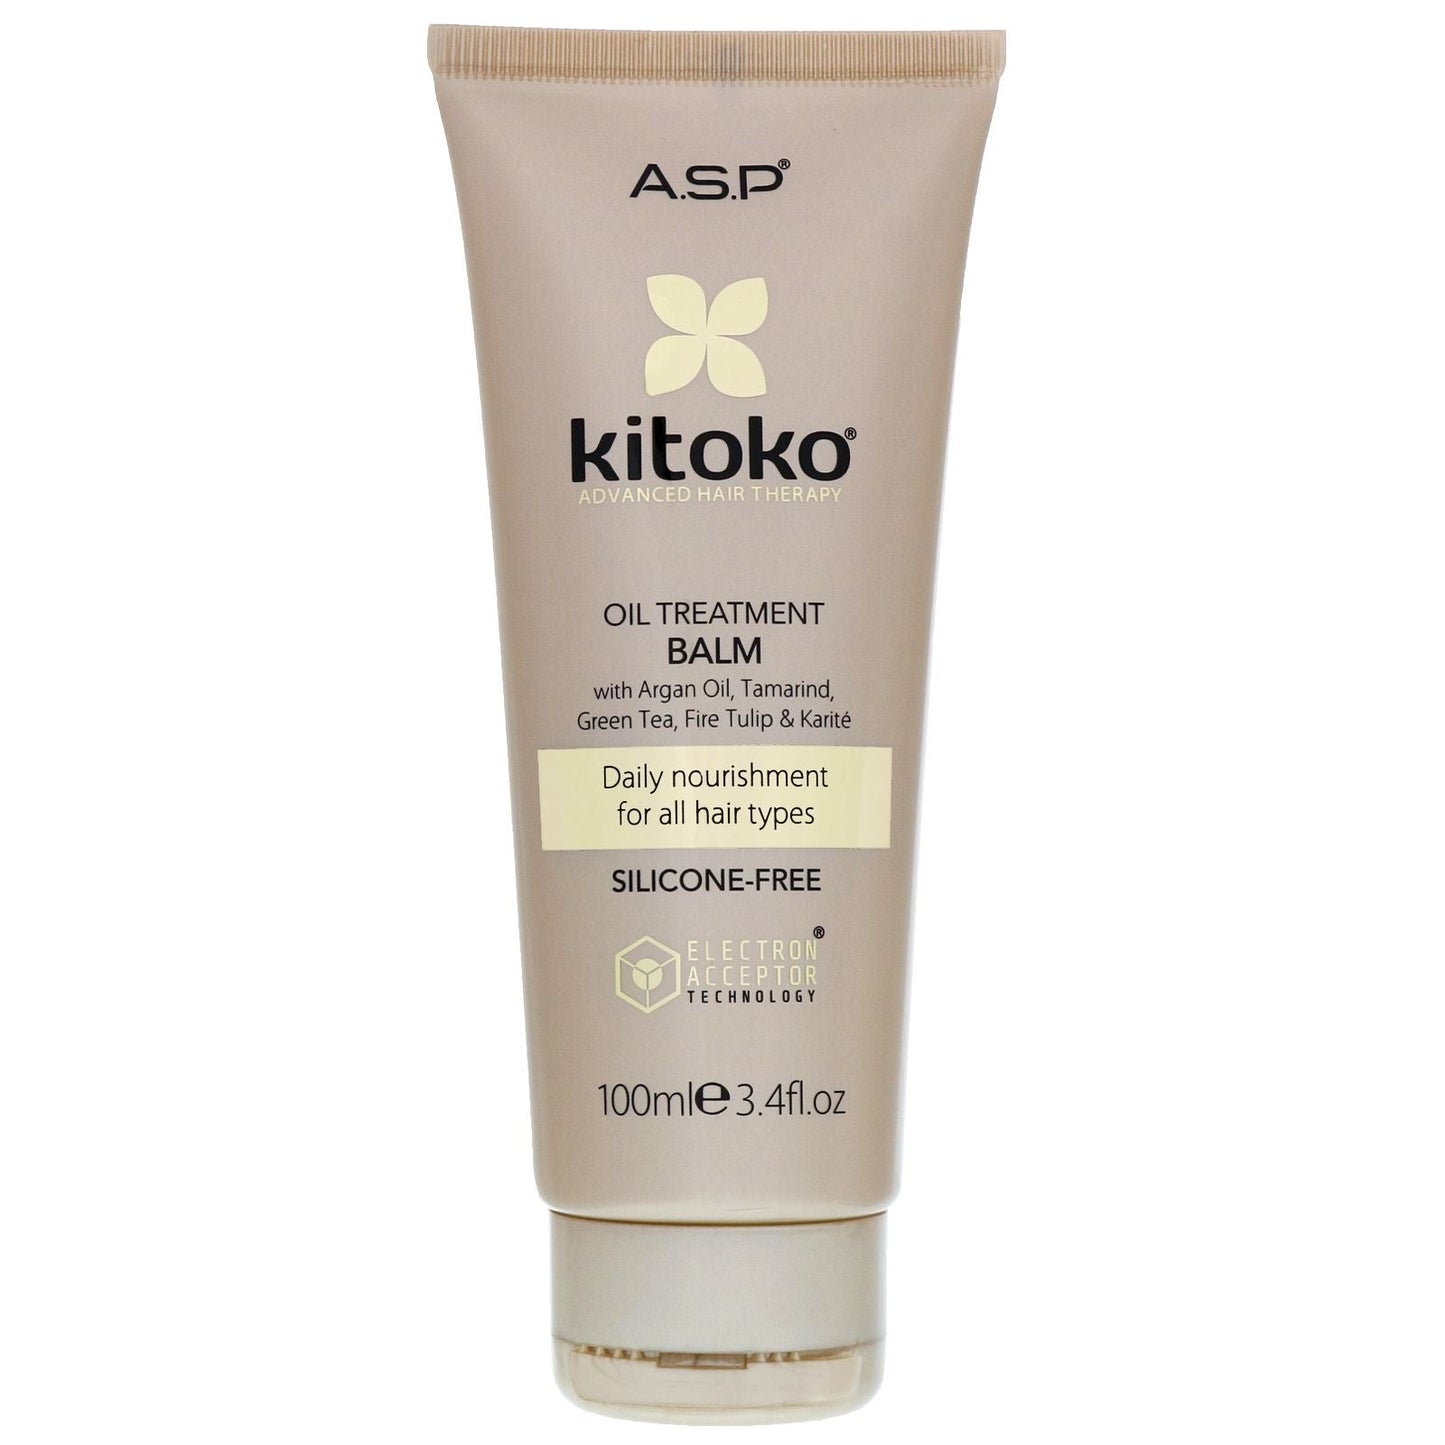 ASP Kitoko Oil Treatment Balm 100ml